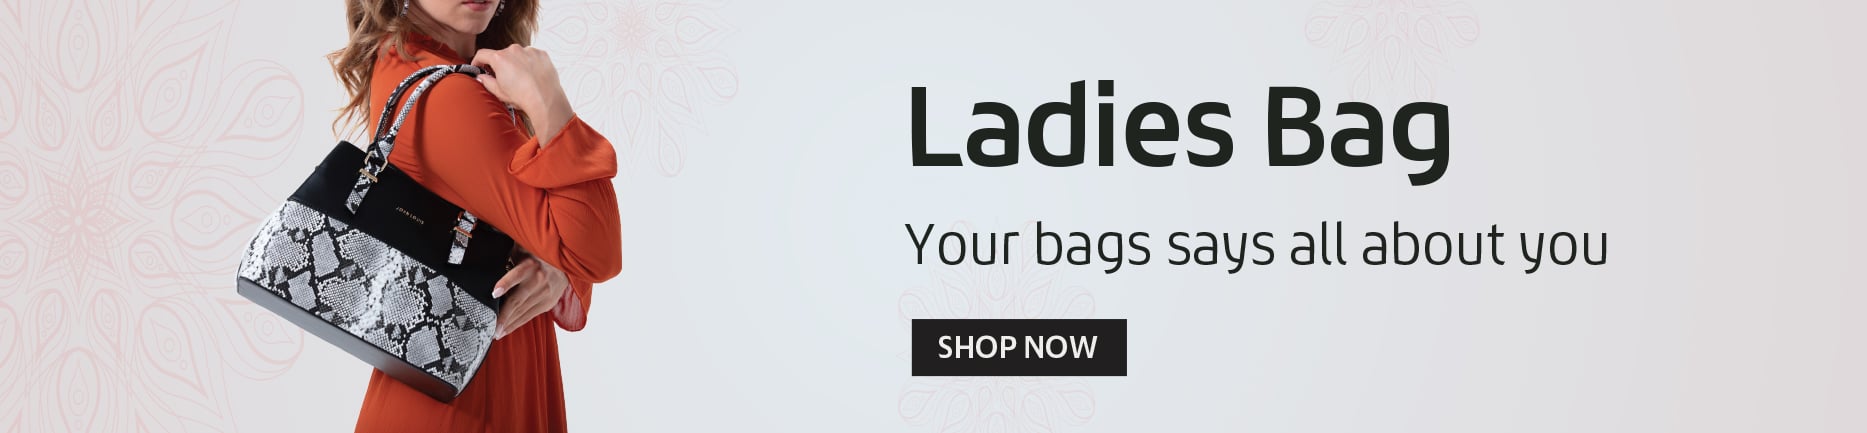 Ladies Bag